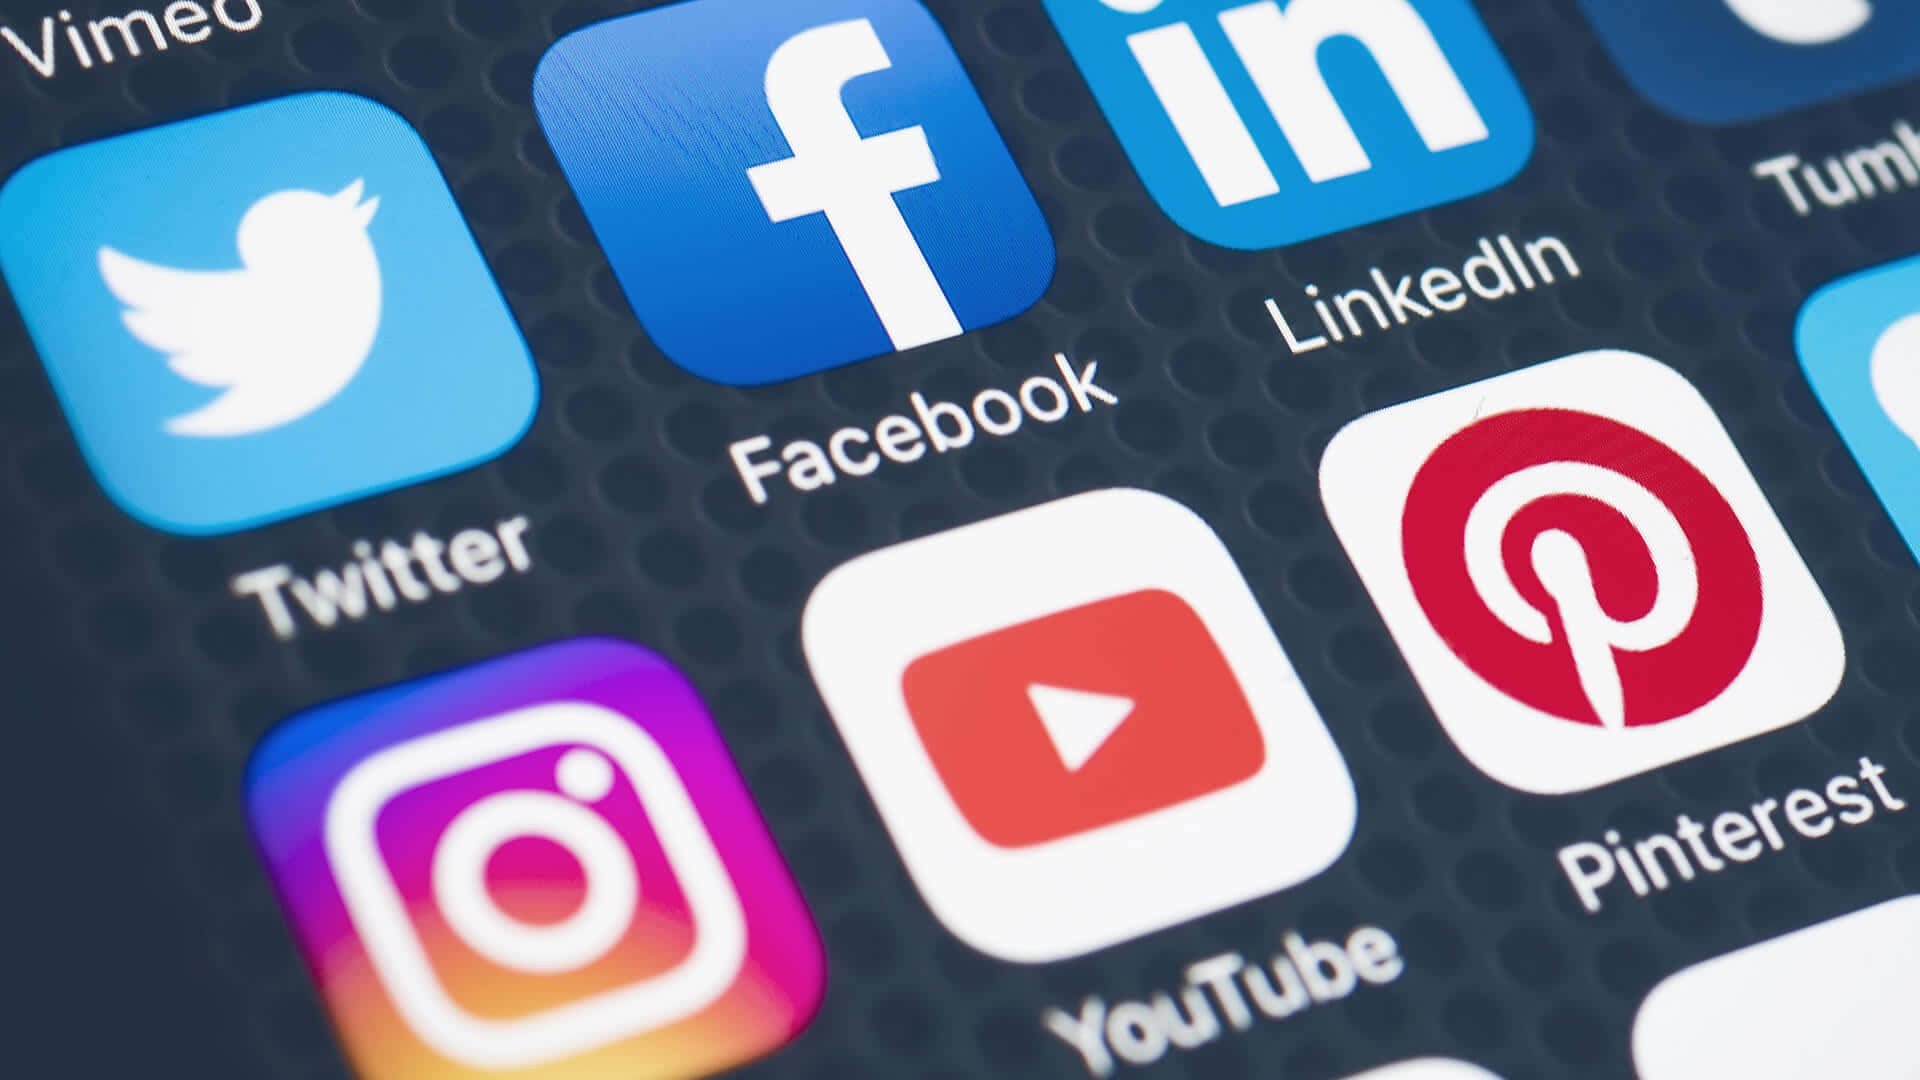 Coljuegos planea implementar nuevas medidas para controlar los sorteos de influencers en las redes sociales